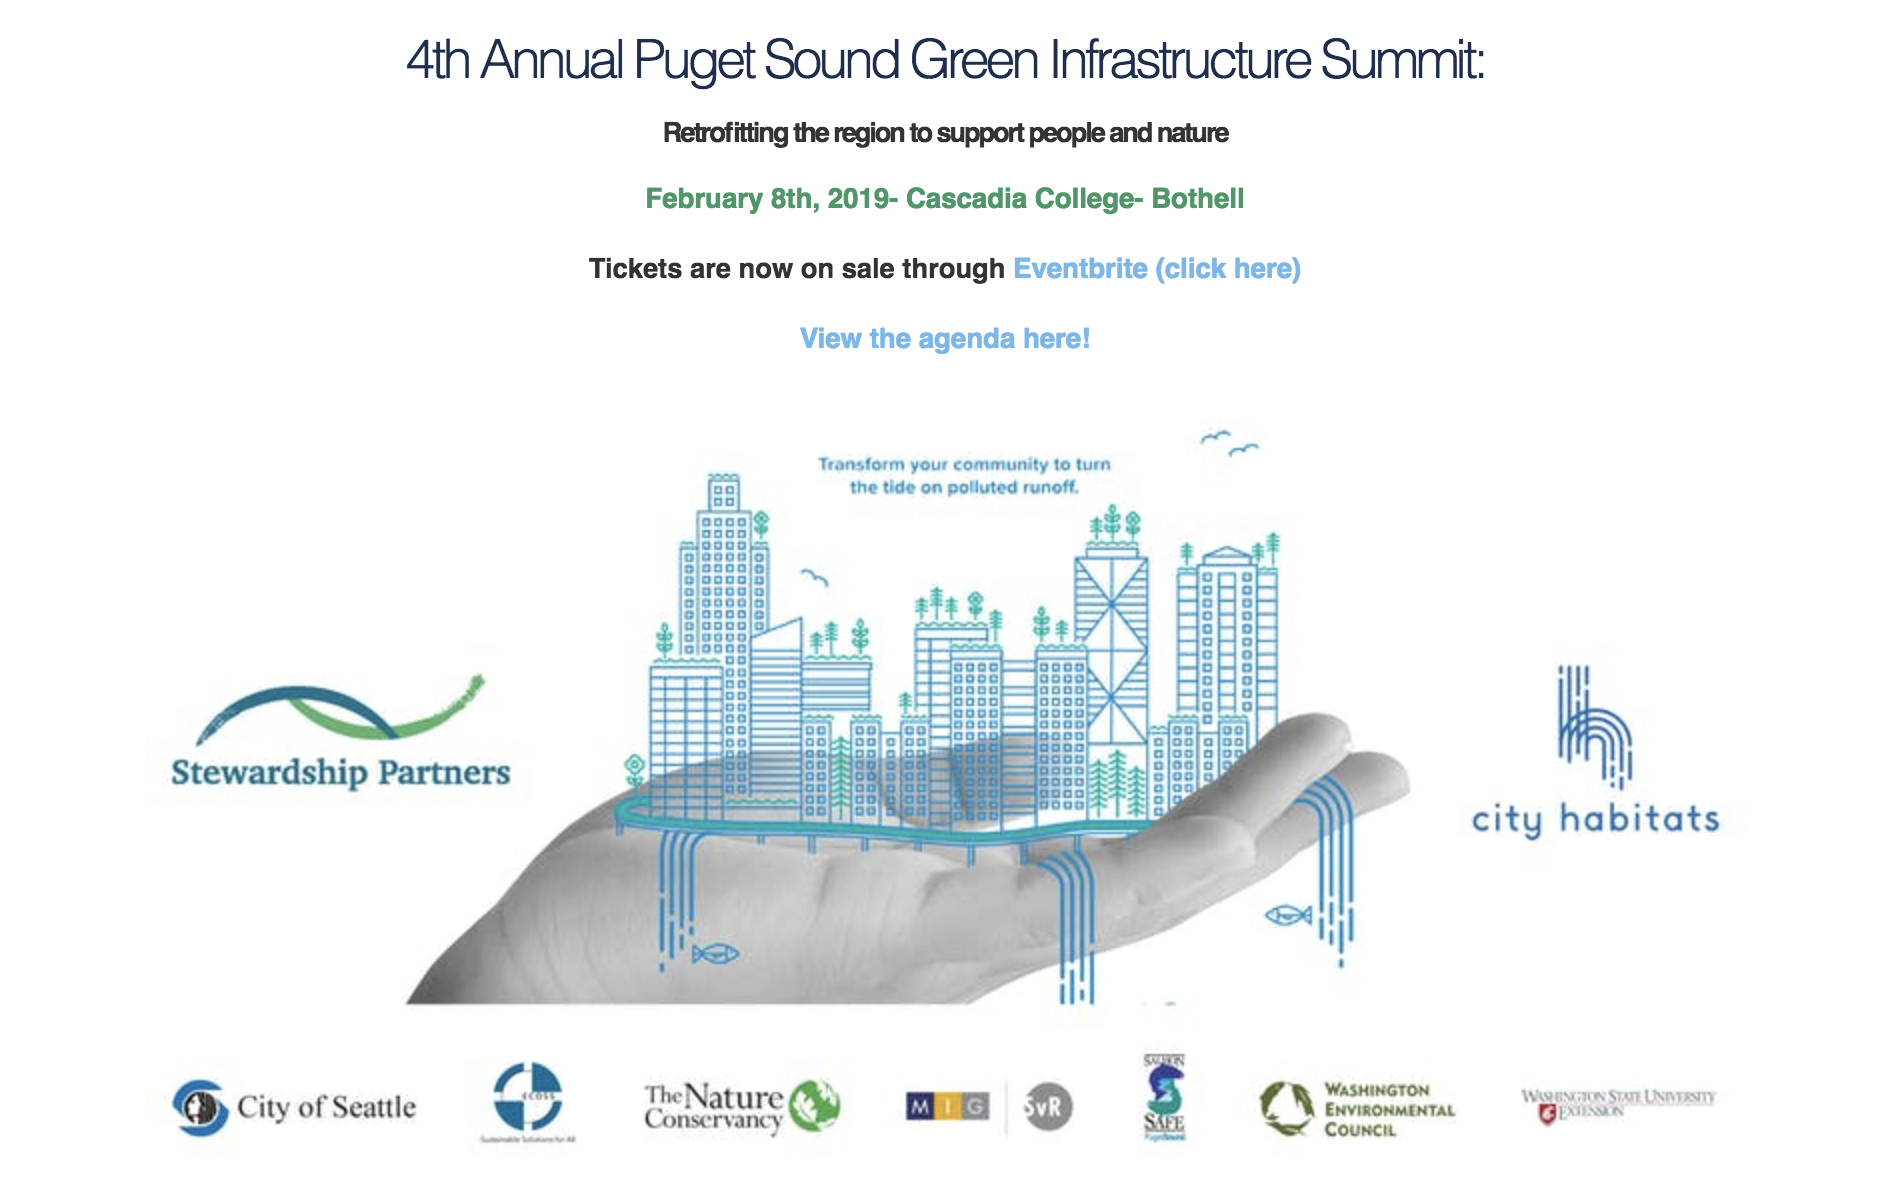 Puget Sound Green Infrastructure Summit